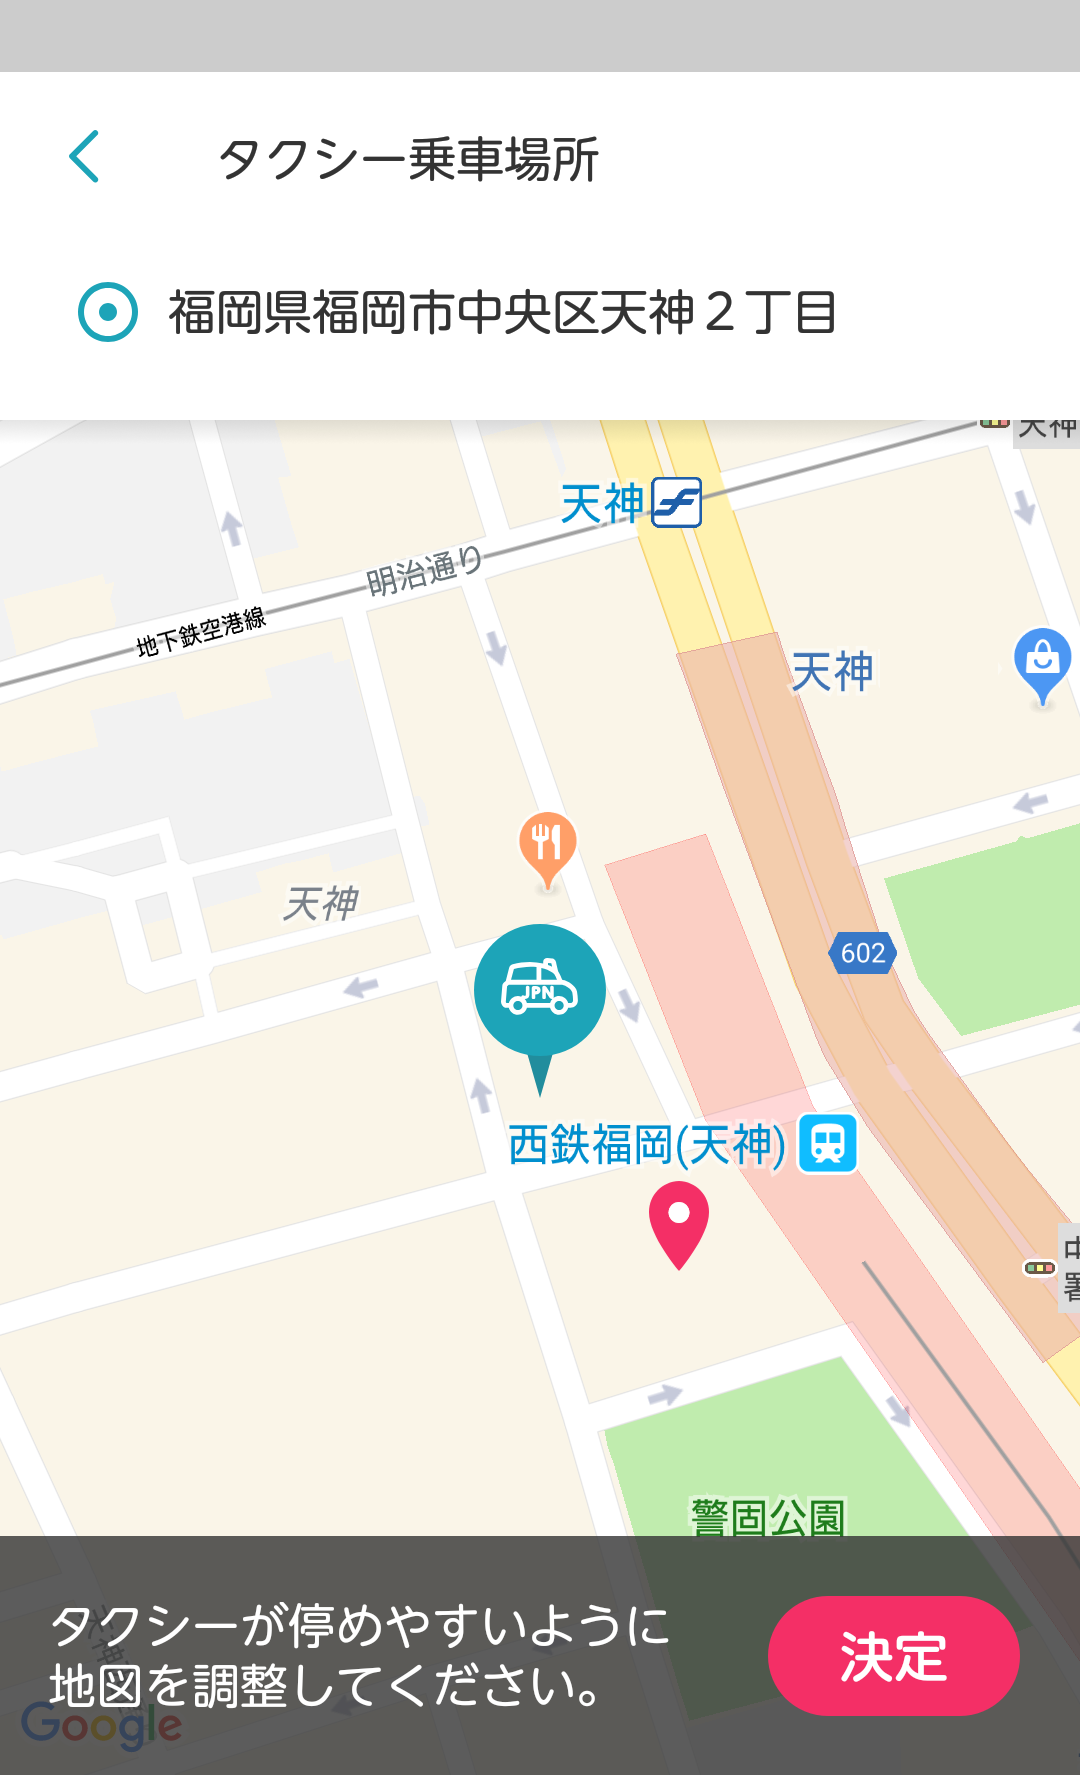 トヨタと西鉄が福岡市でマルチモーダルモビリティサービス「my route」の実証実験を開始